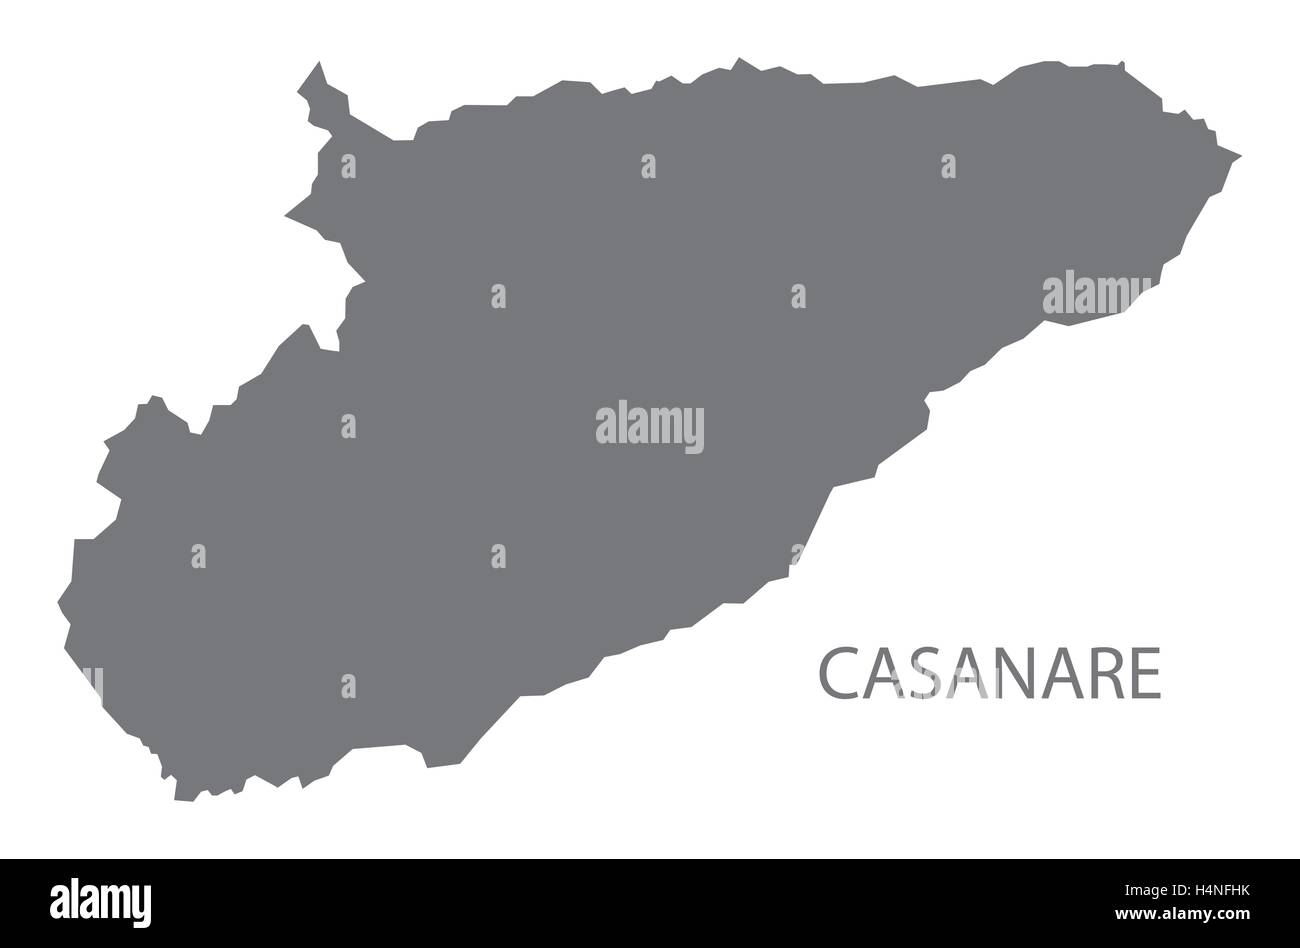 Casanare Colombia Map in grey Stock Vector